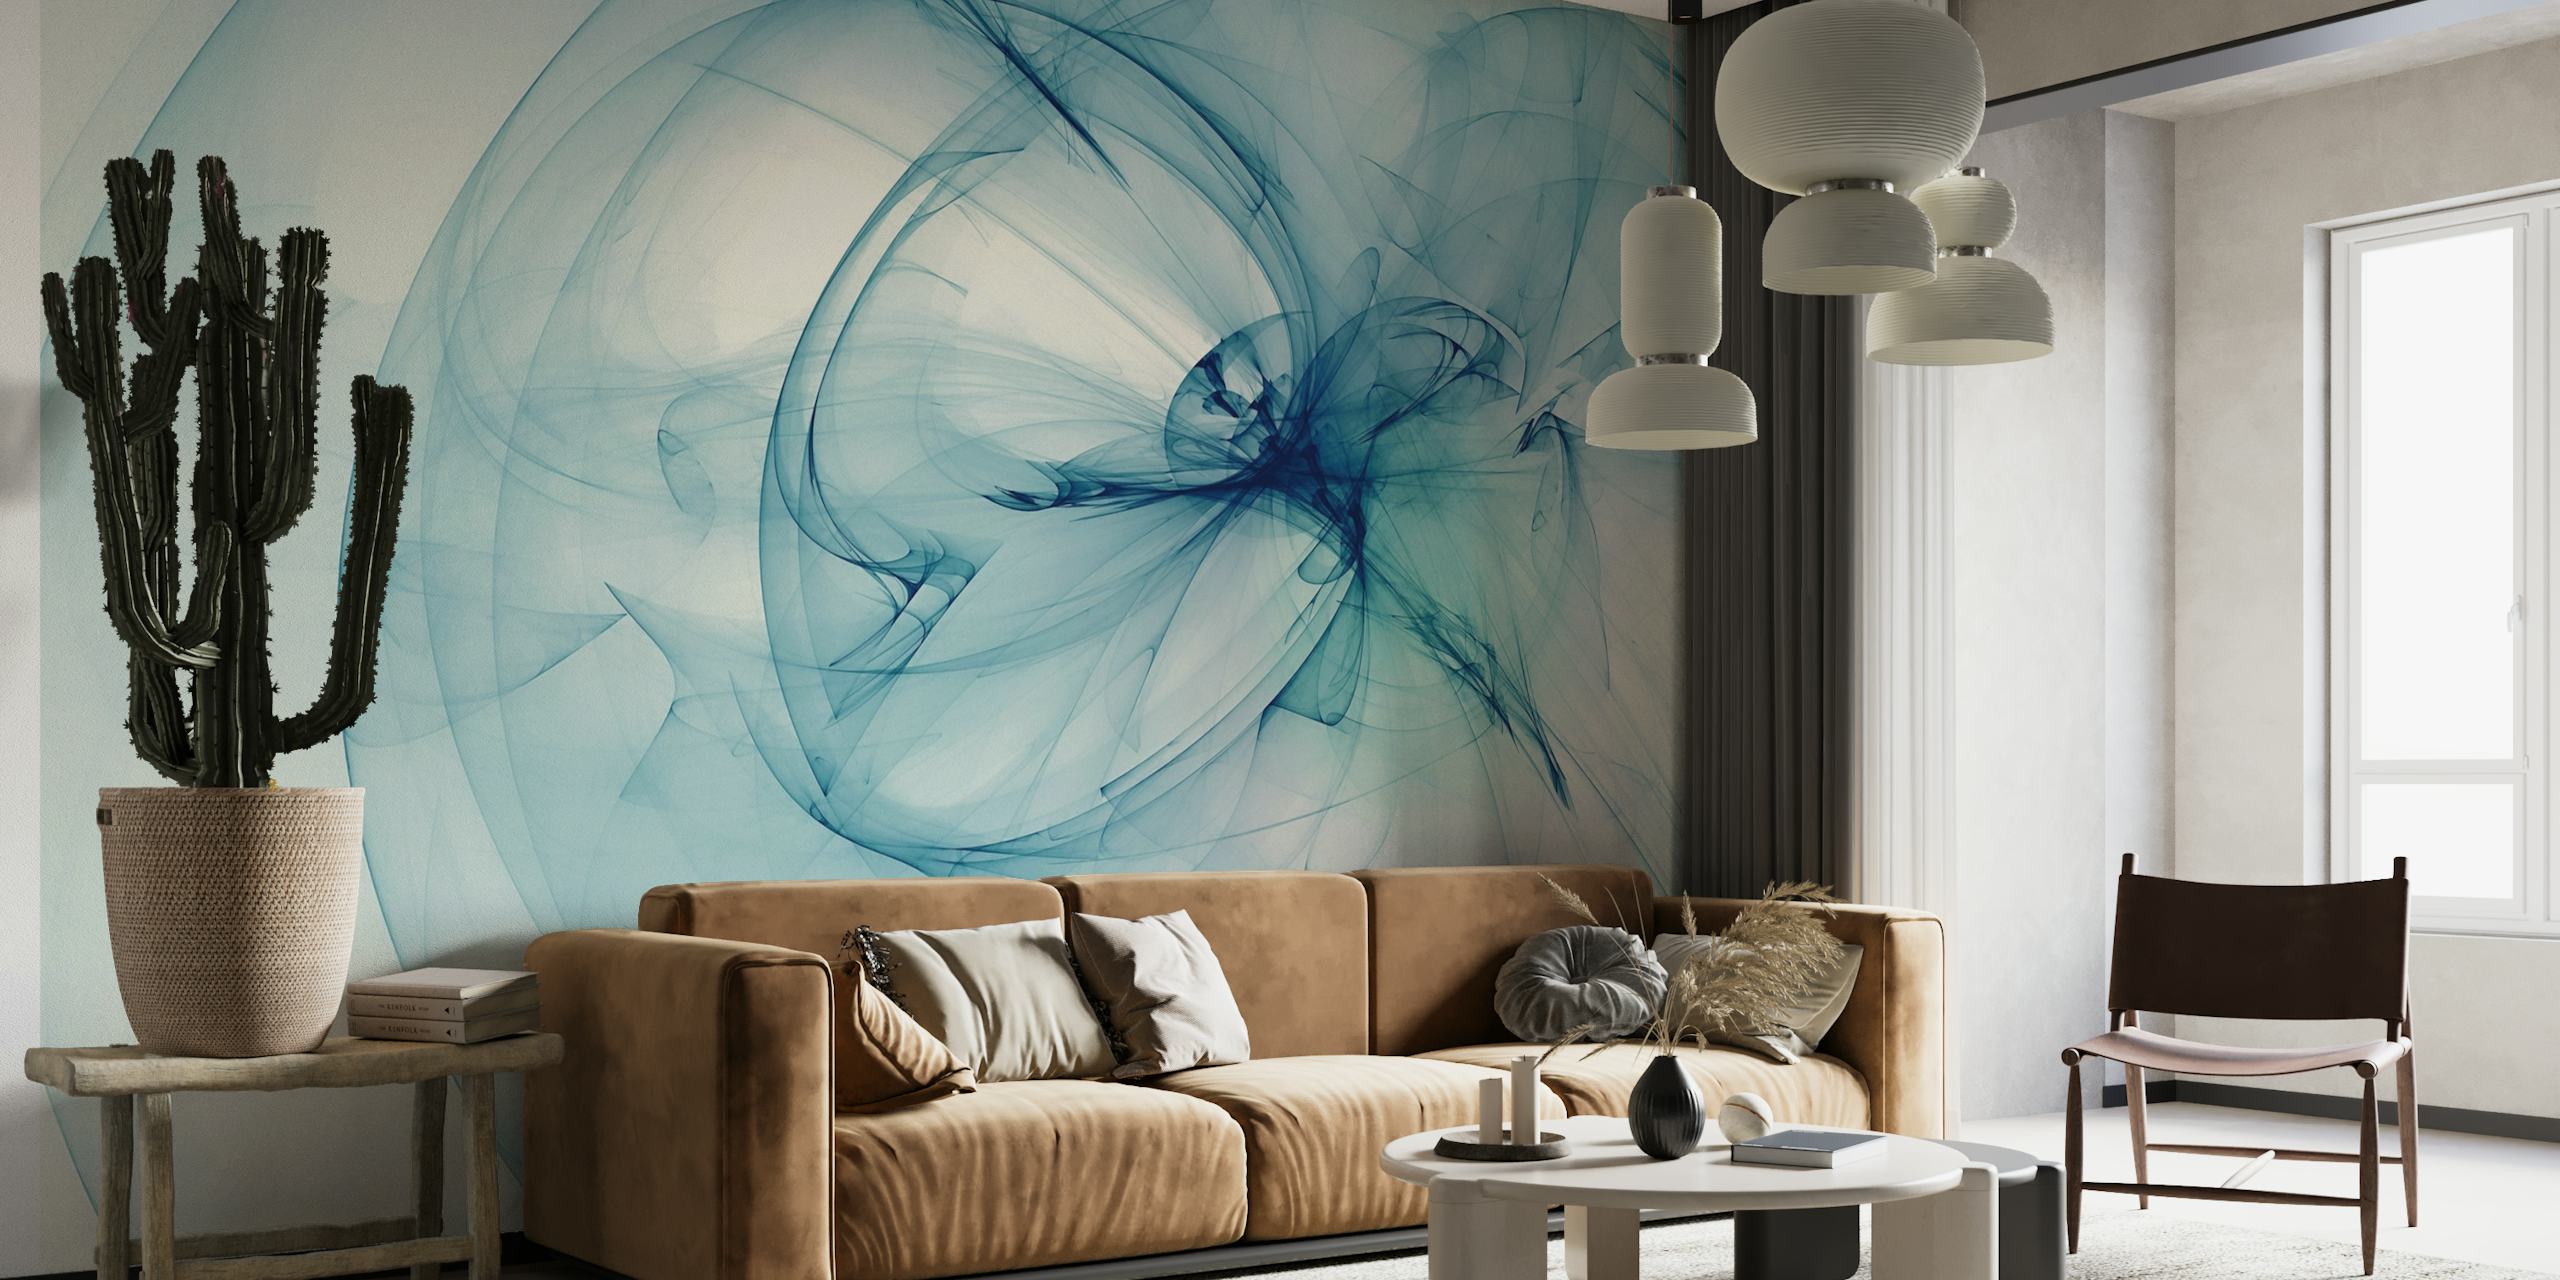 Abstrakt lyseblåt røglignende vægmaleri design, der formidler sindsro og elegance